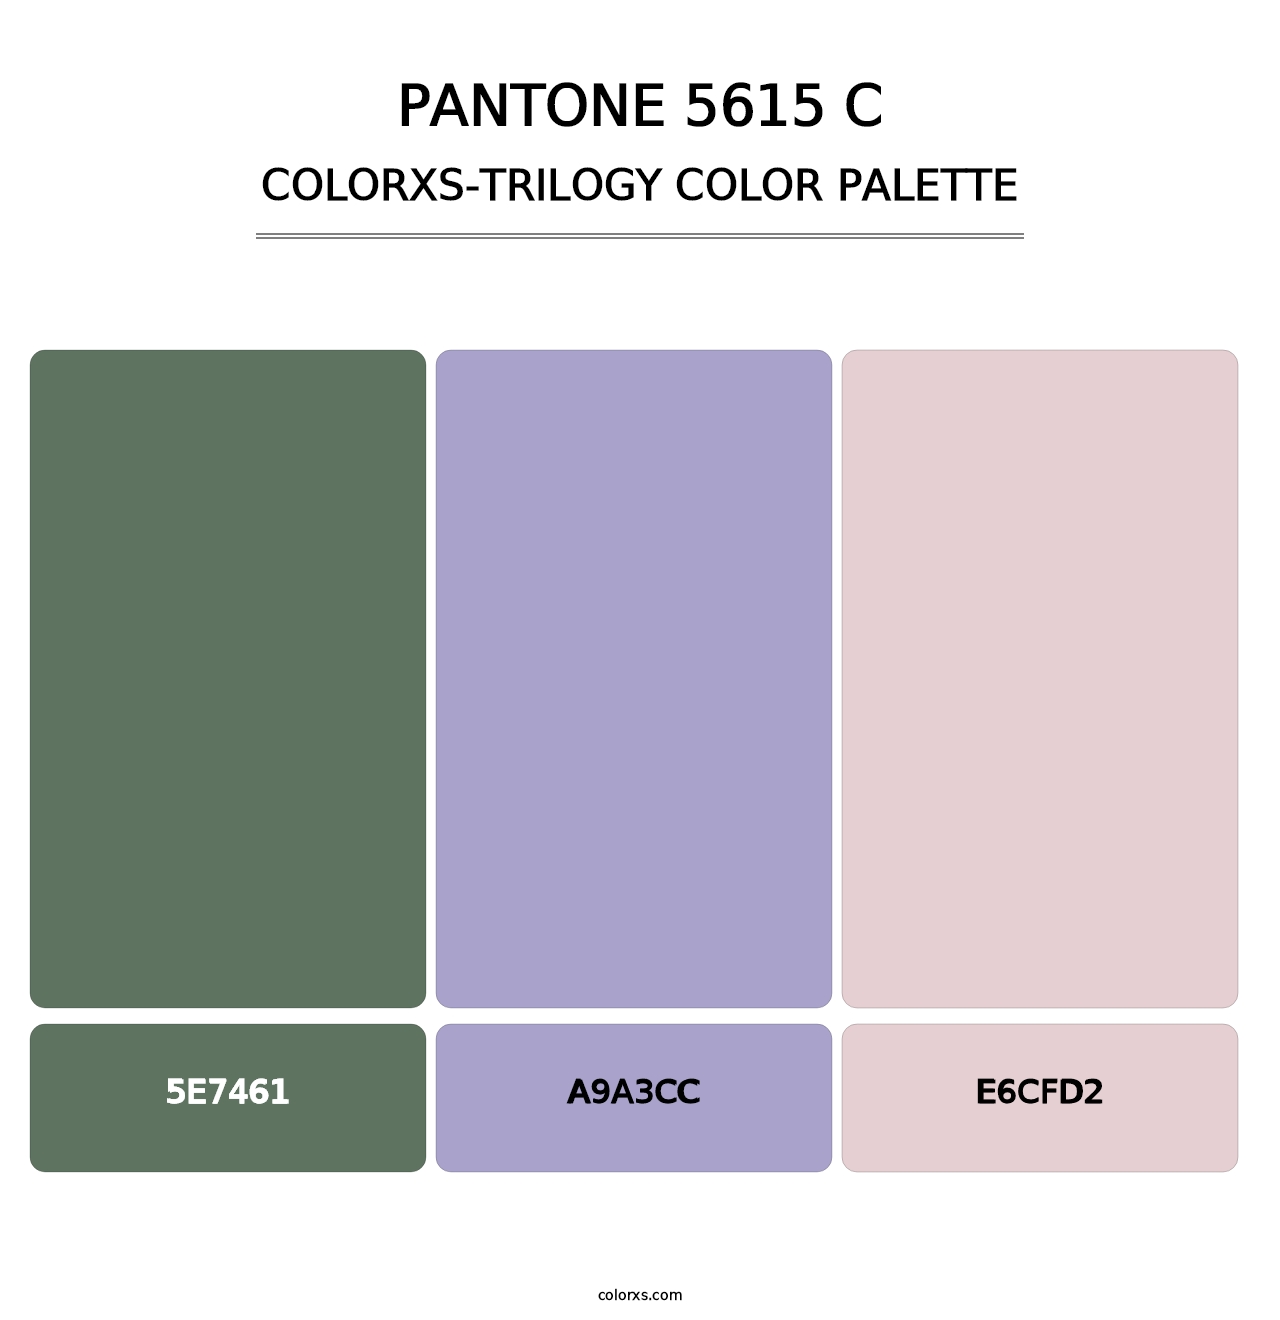 PANTONE 5615 C - Colorxs Trilogy Palette